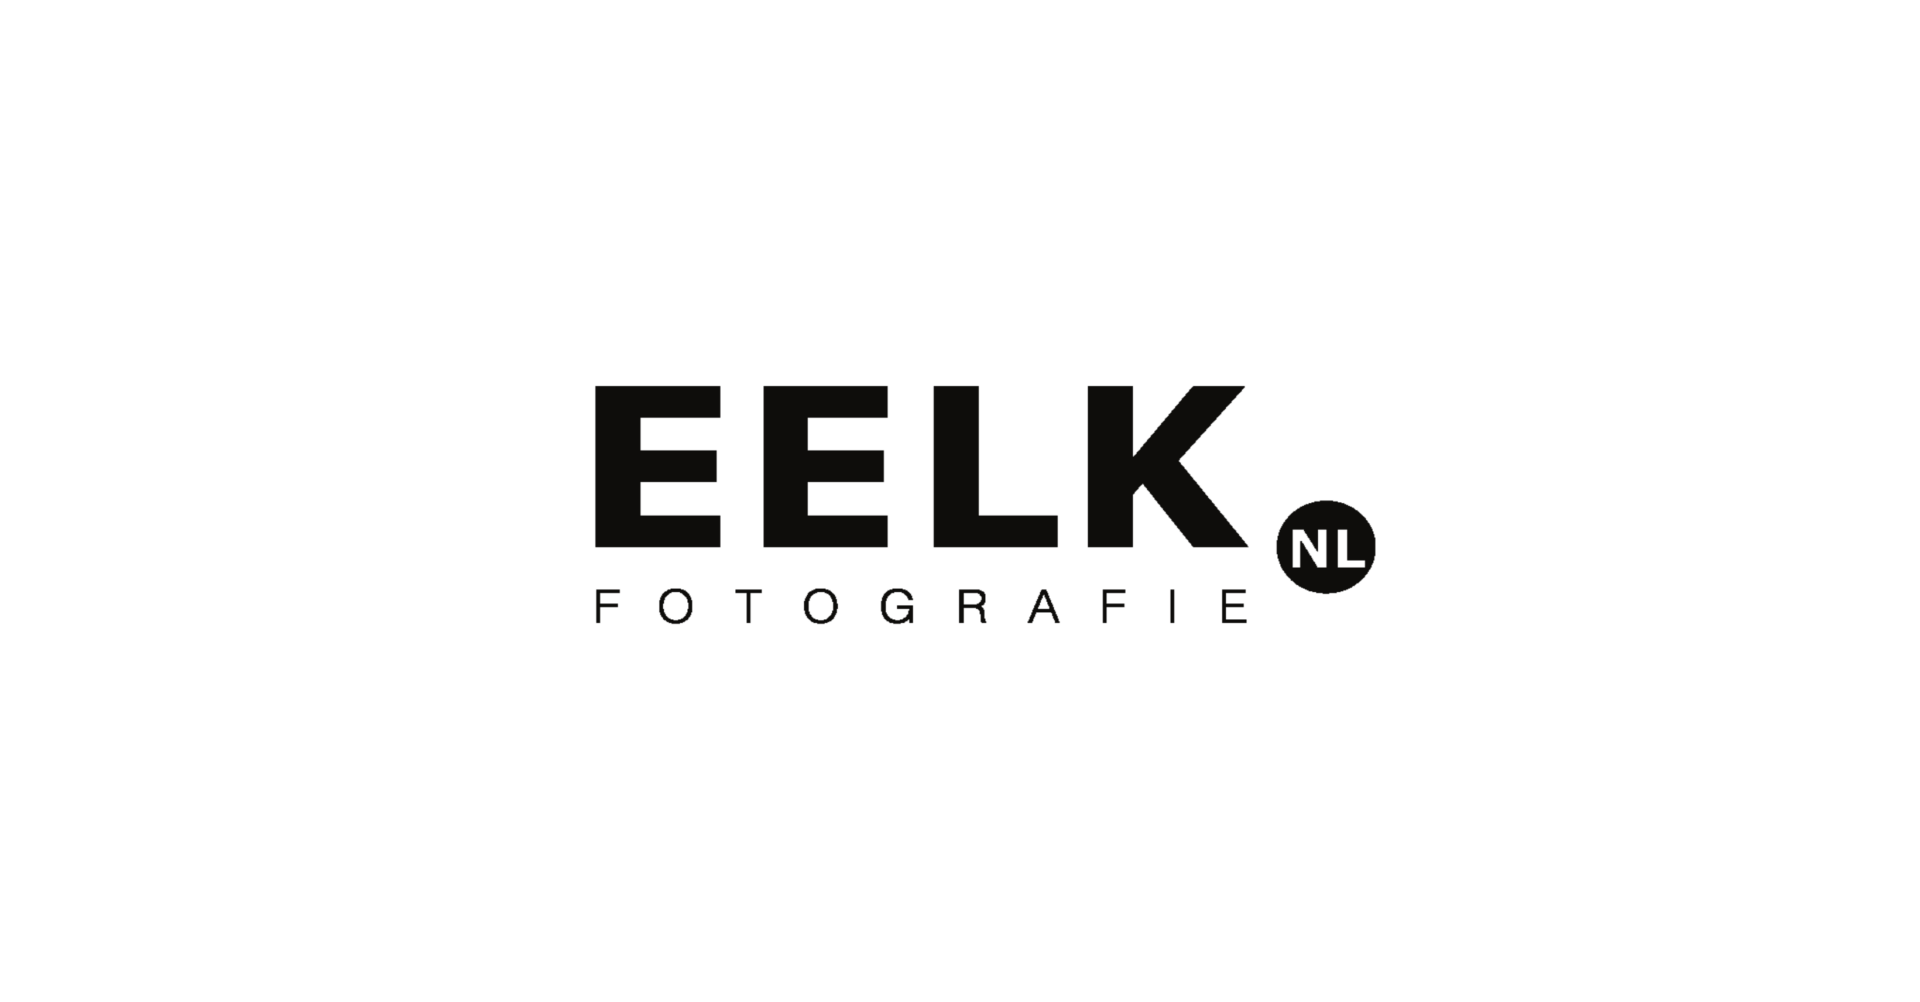 Eelk.nl